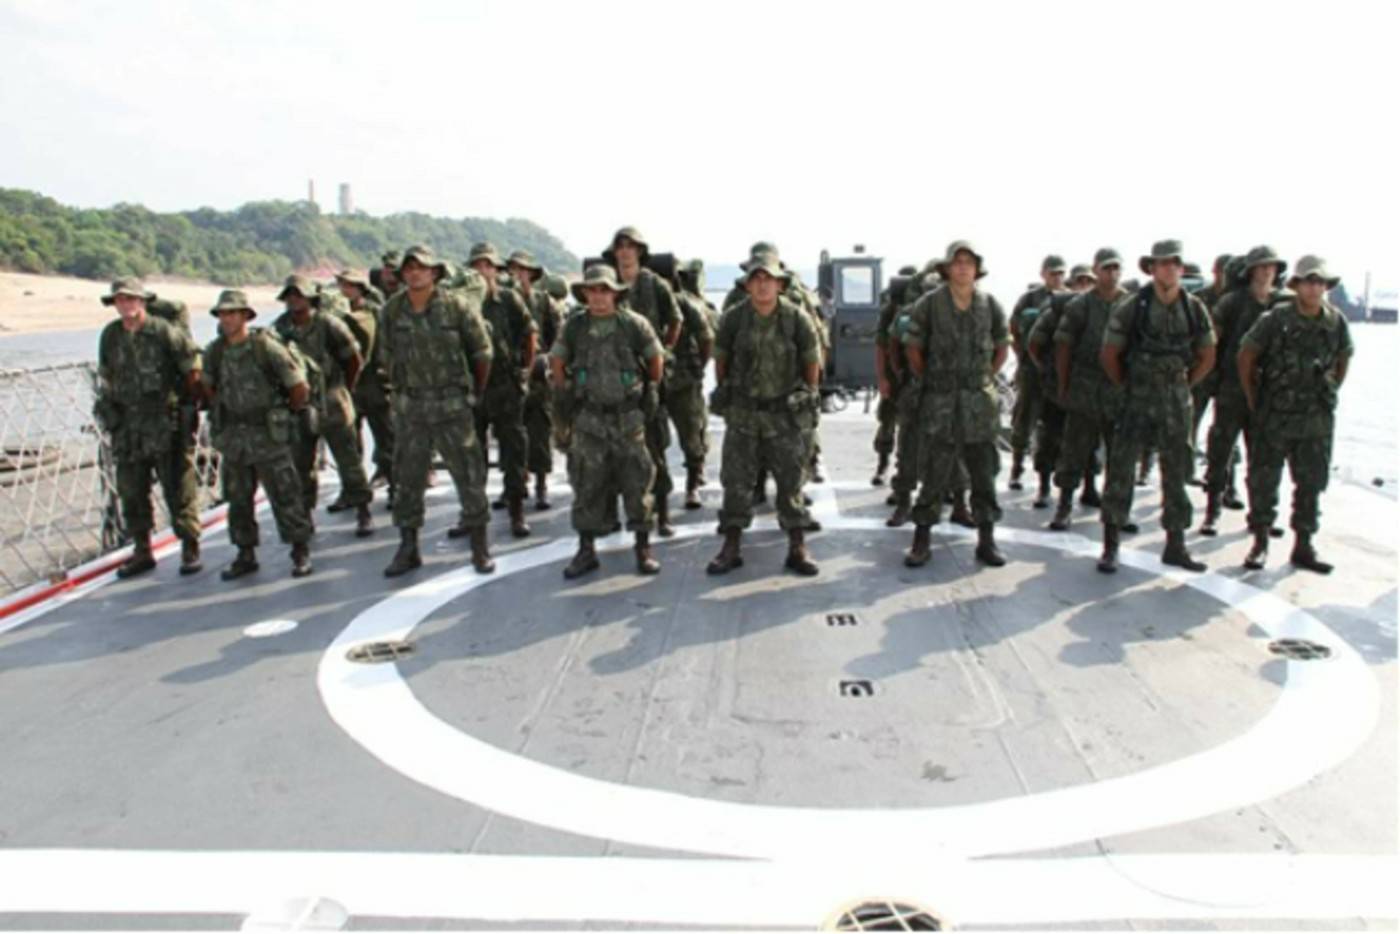 Fuzileiros Navais formados no convôo do Pedro Teixeira durante a Operação AGATA III. (foto: CCSM)